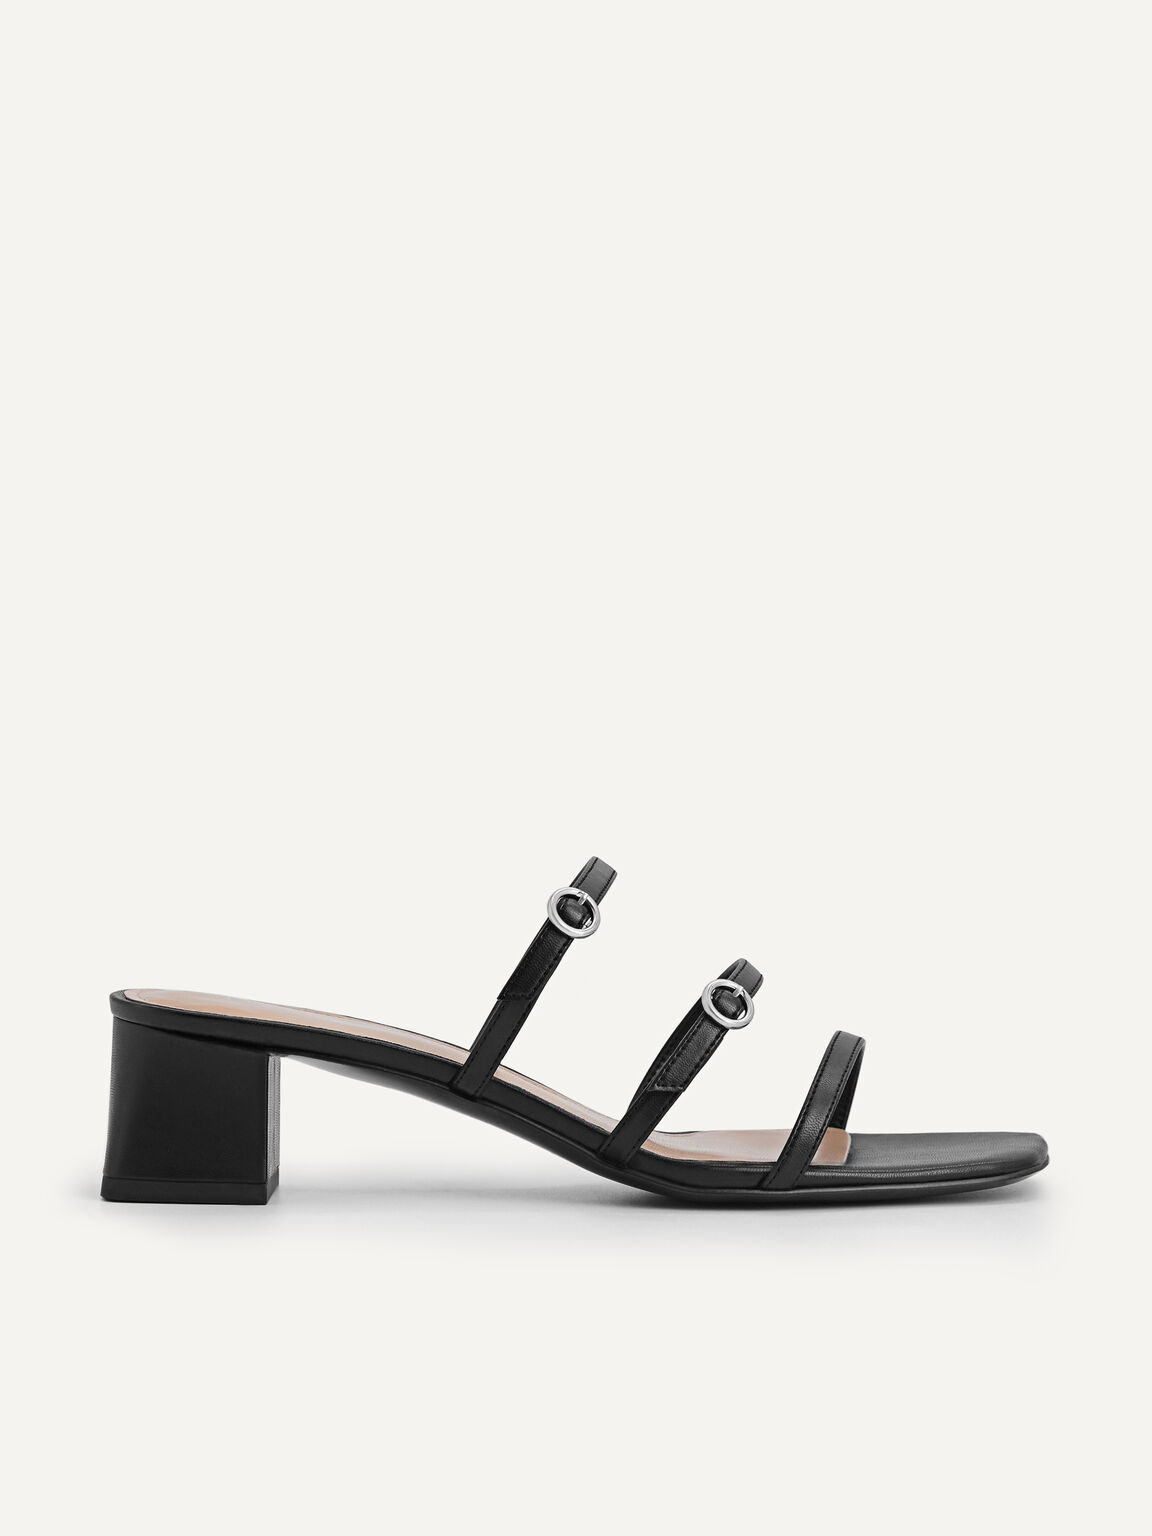 Strappy Heeled Sandals, Black, hi-res